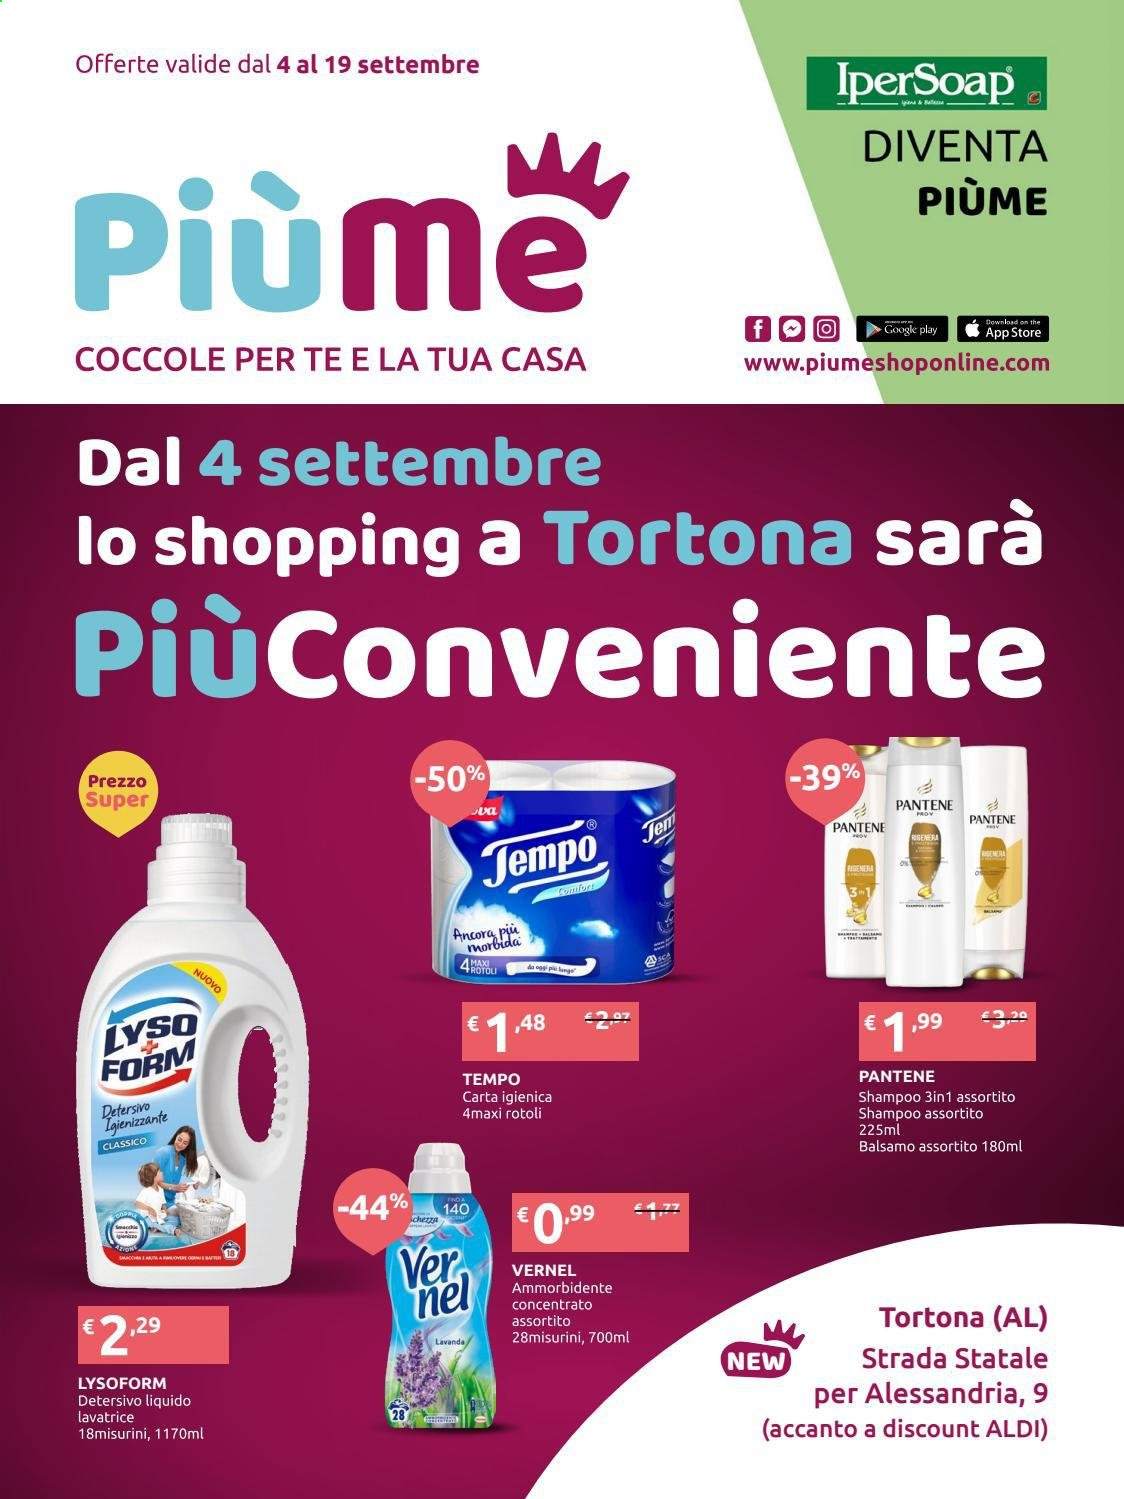 thumbnail - Volantino IperSoap - 4/9/2021 - 19/9/2021 - Prodotti in offerta - carta igienica, Lysoform, ammorbidente, detersivo liquido per lavatrice, Vernel, shampoo, Pantene. Pagina 1.